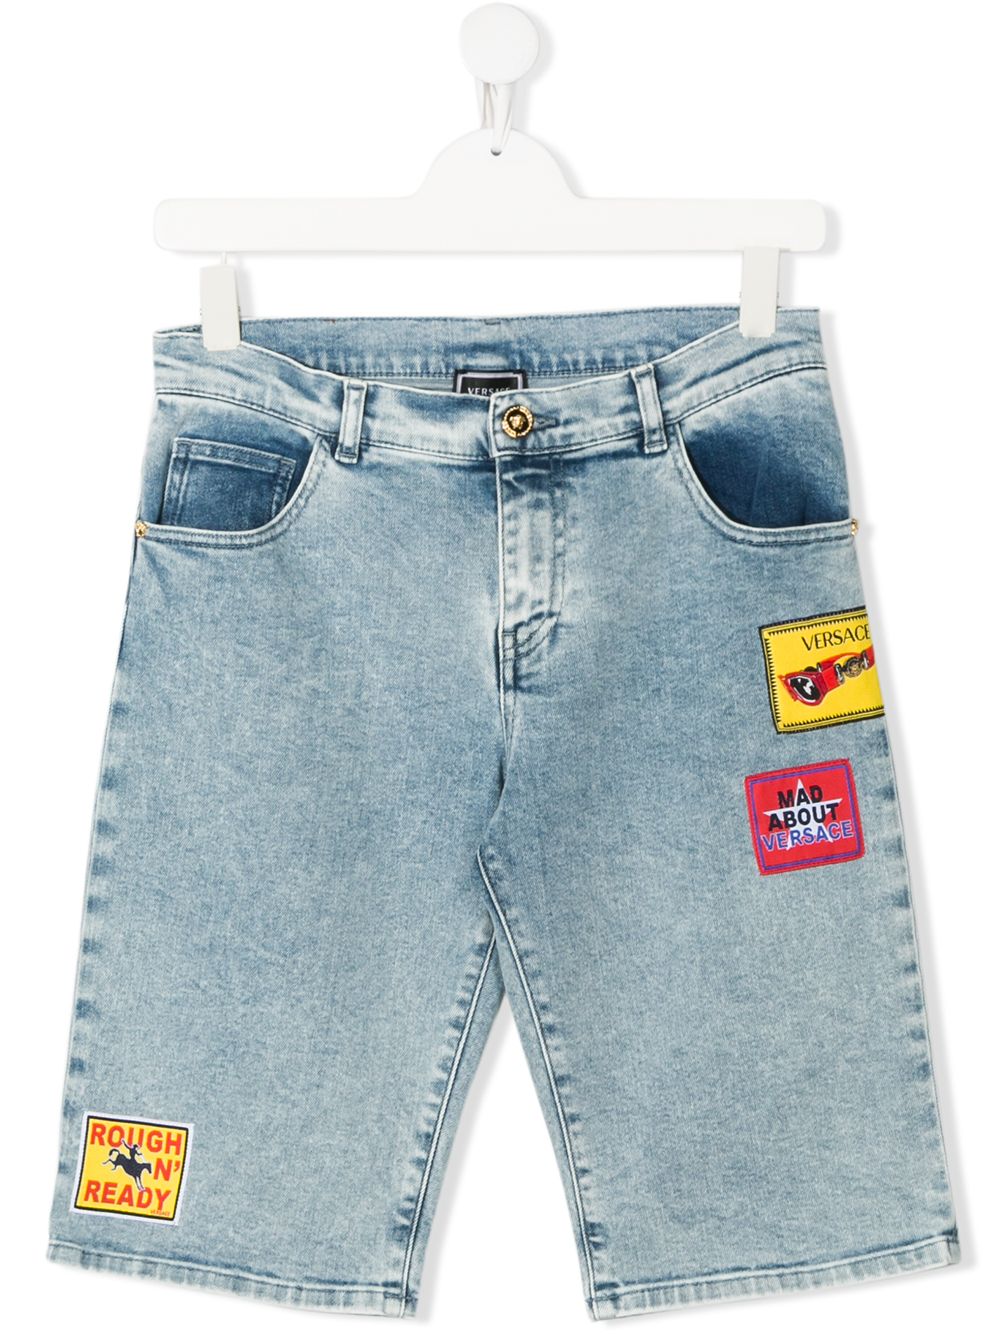 фото Young versace джинсовые шорты с вышивкой